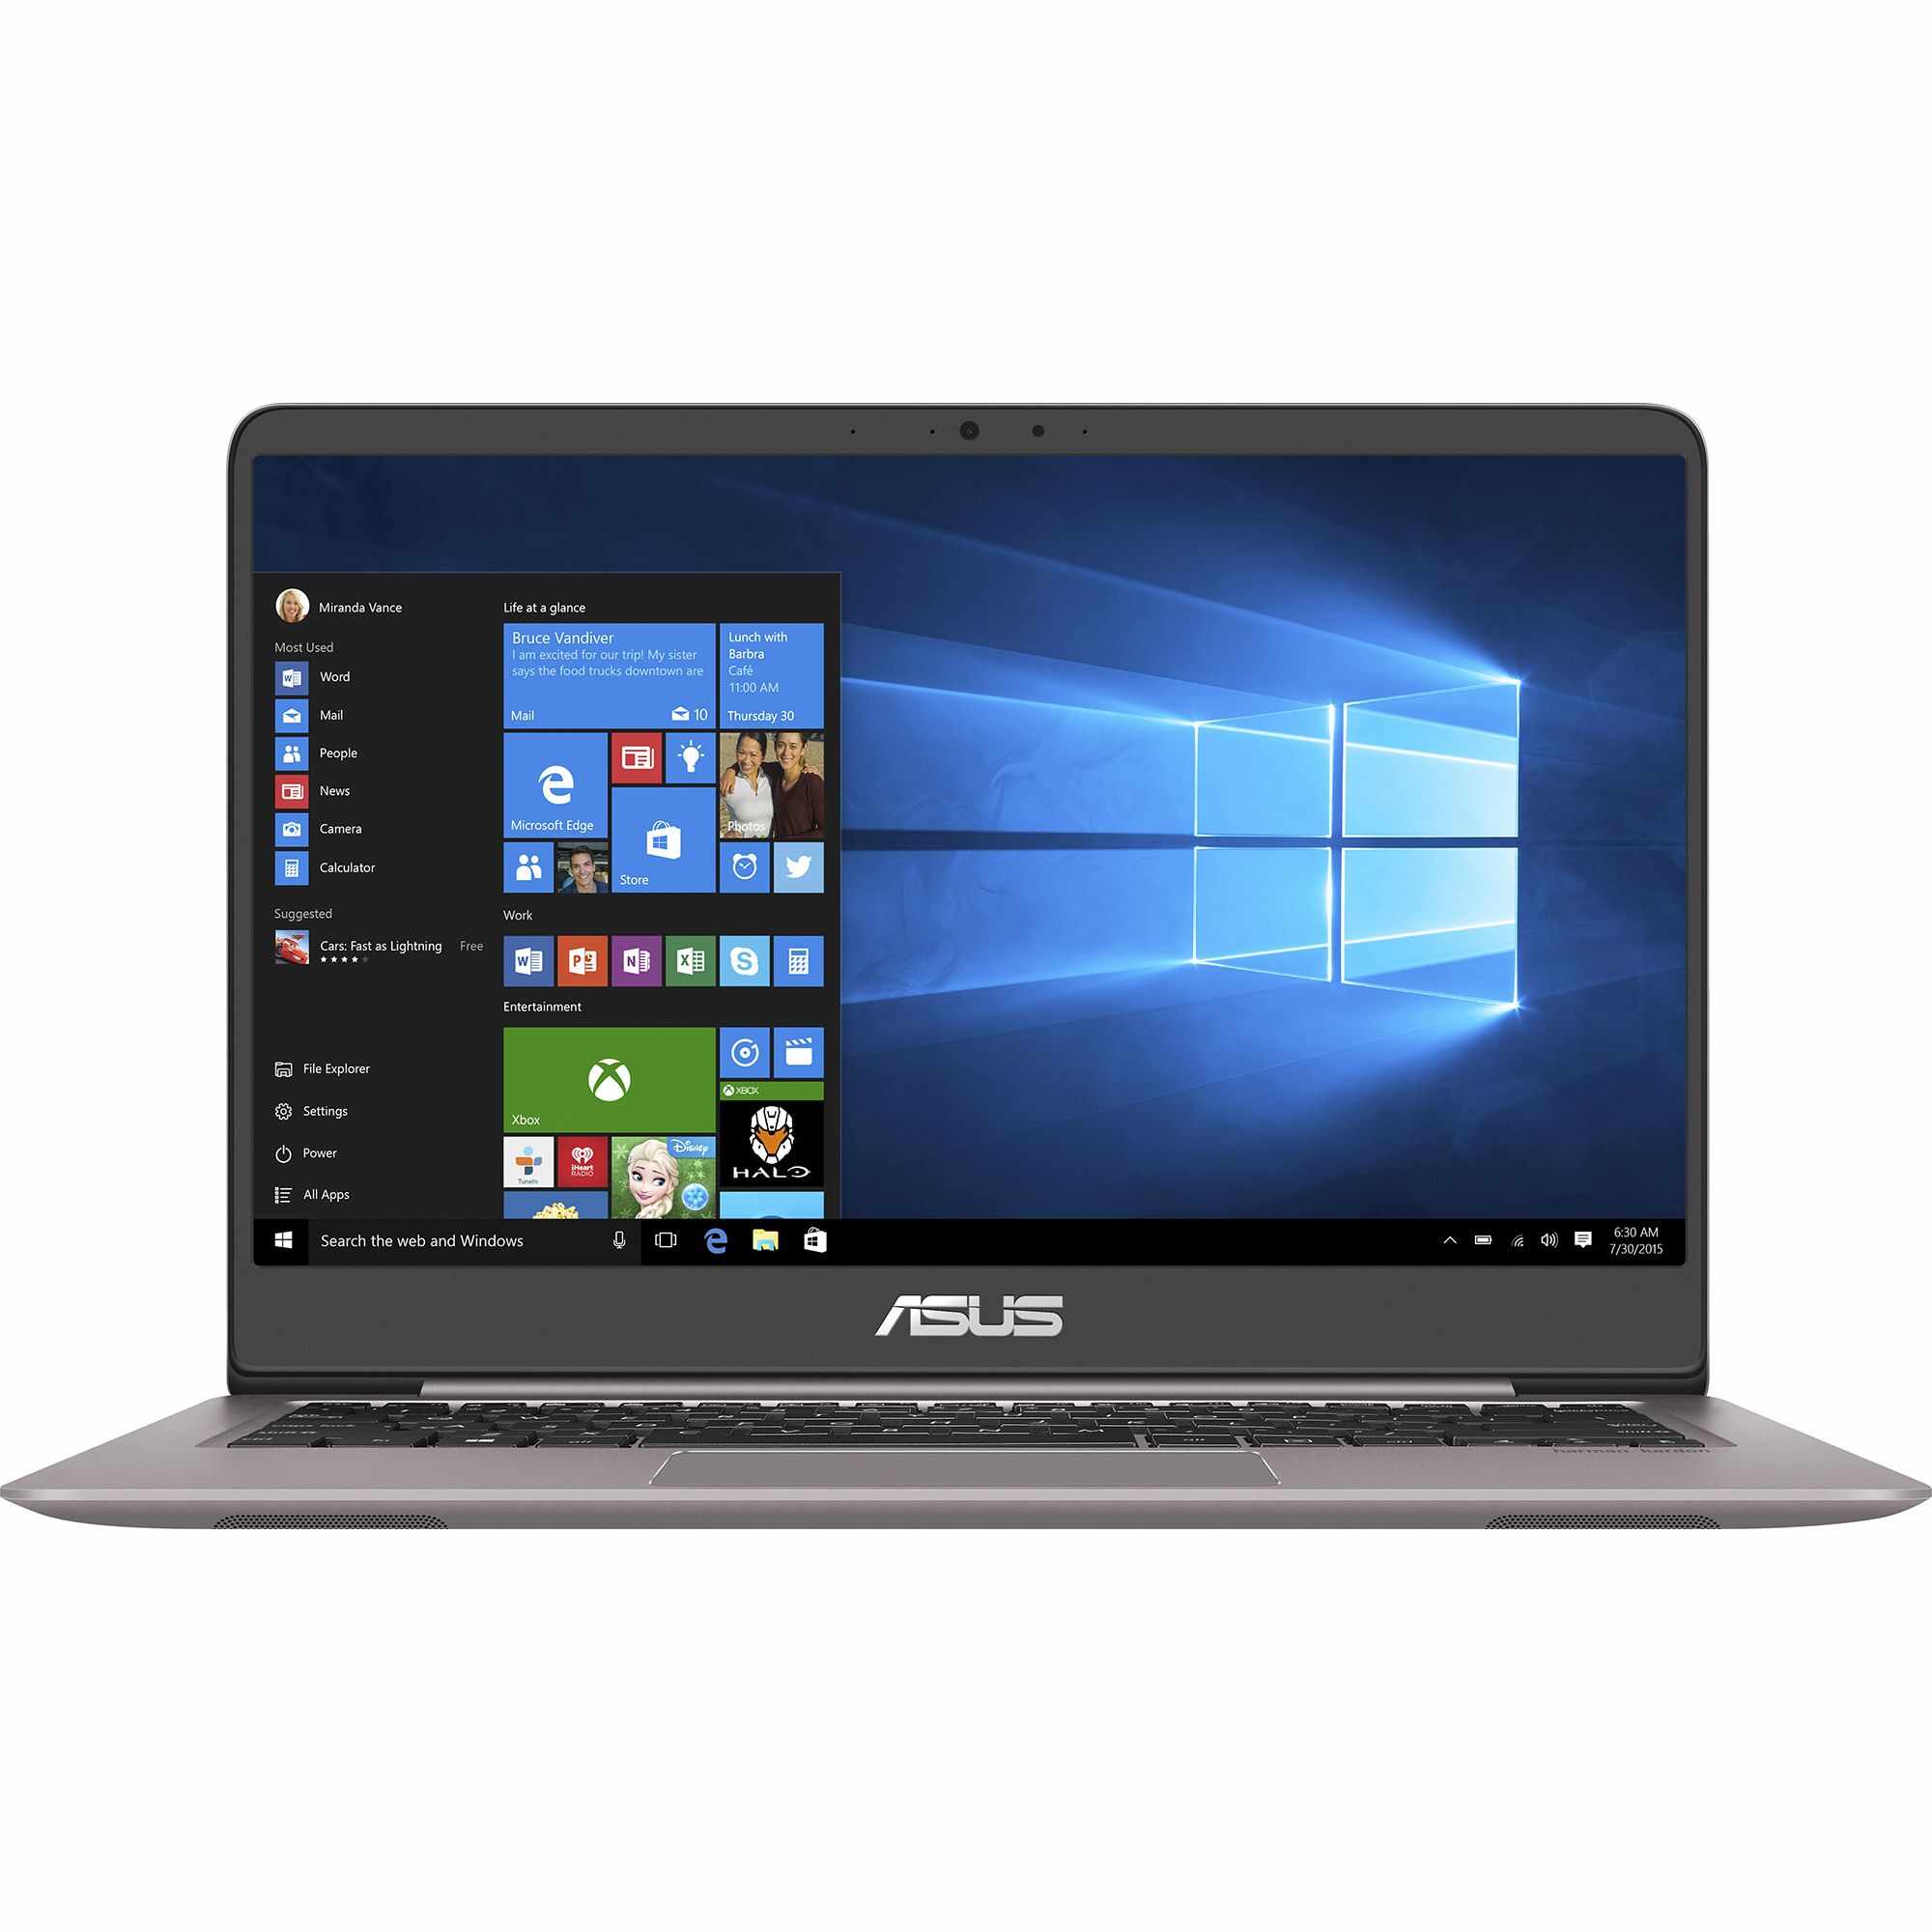 Laptop ASUS UX410UQ-GV105T, Intel Core i5-7200U, 8GB DDR4, HDD 500GB + SSD 128GB, nVidia GeForce 940MX 2GB, Windows 10